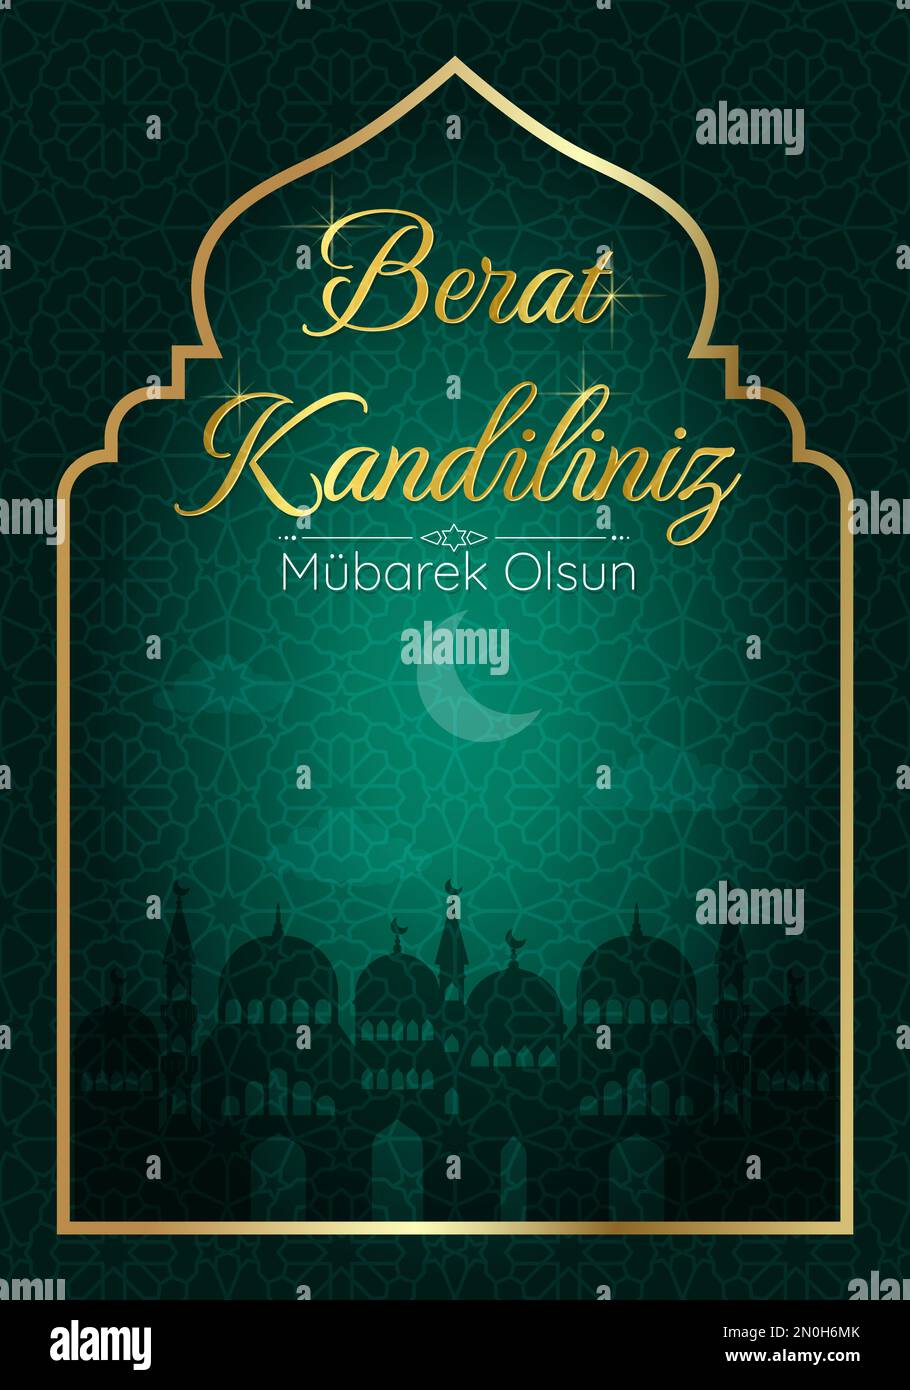 Vacanza musulmana Berat Kandiliniz. Concetto vettoriale della notte Santa islamica. Scheda verticale con silhouette della moschea e luna crescente. Mubarec olsun. V Illustrazione Vettoriale